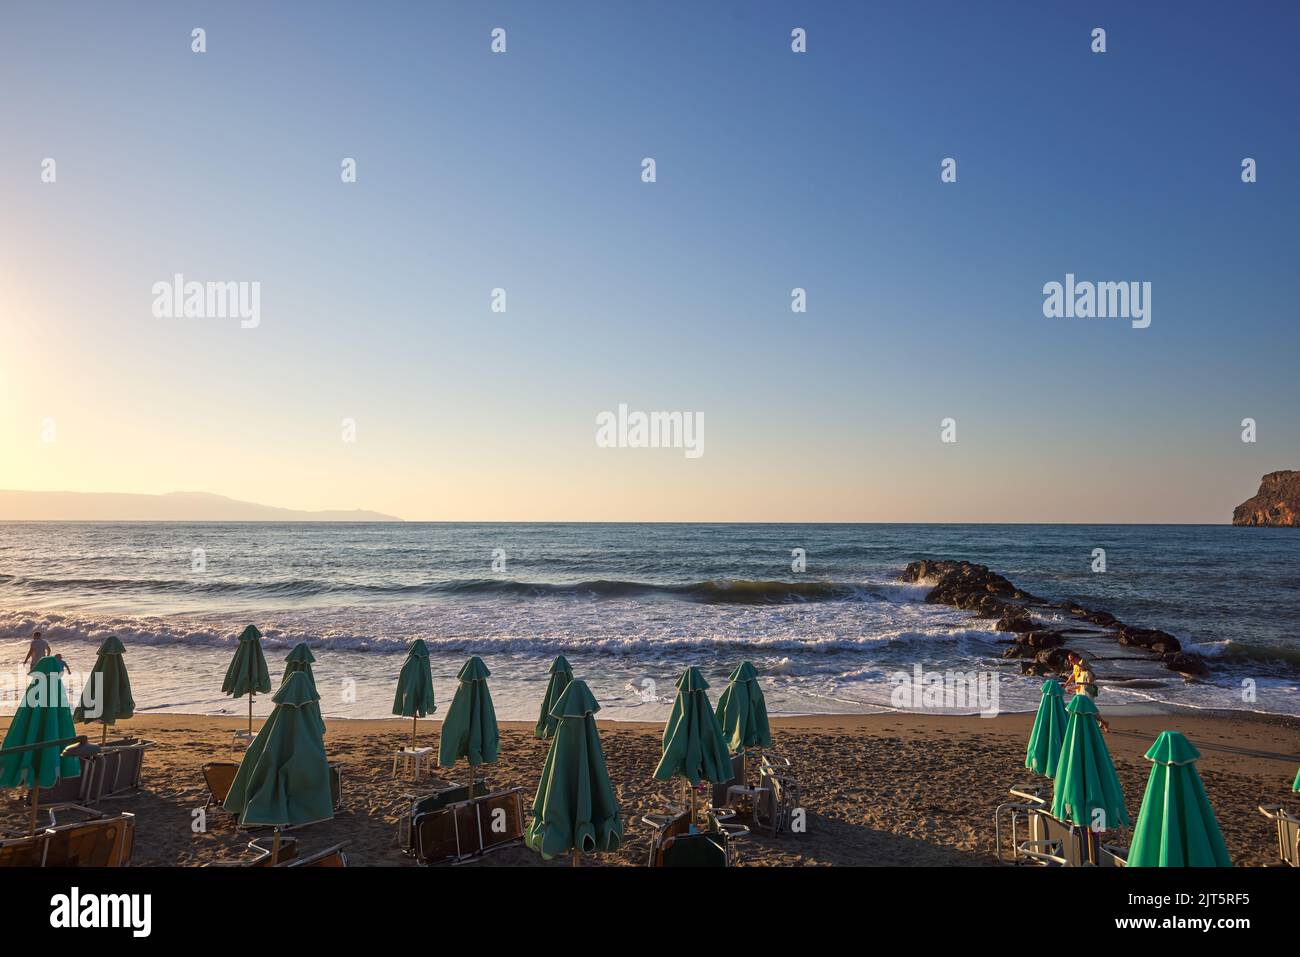 Tumbonas y sombrillas vacías en la playa al atardecer en Chania Creta - Grecia Foto de stock